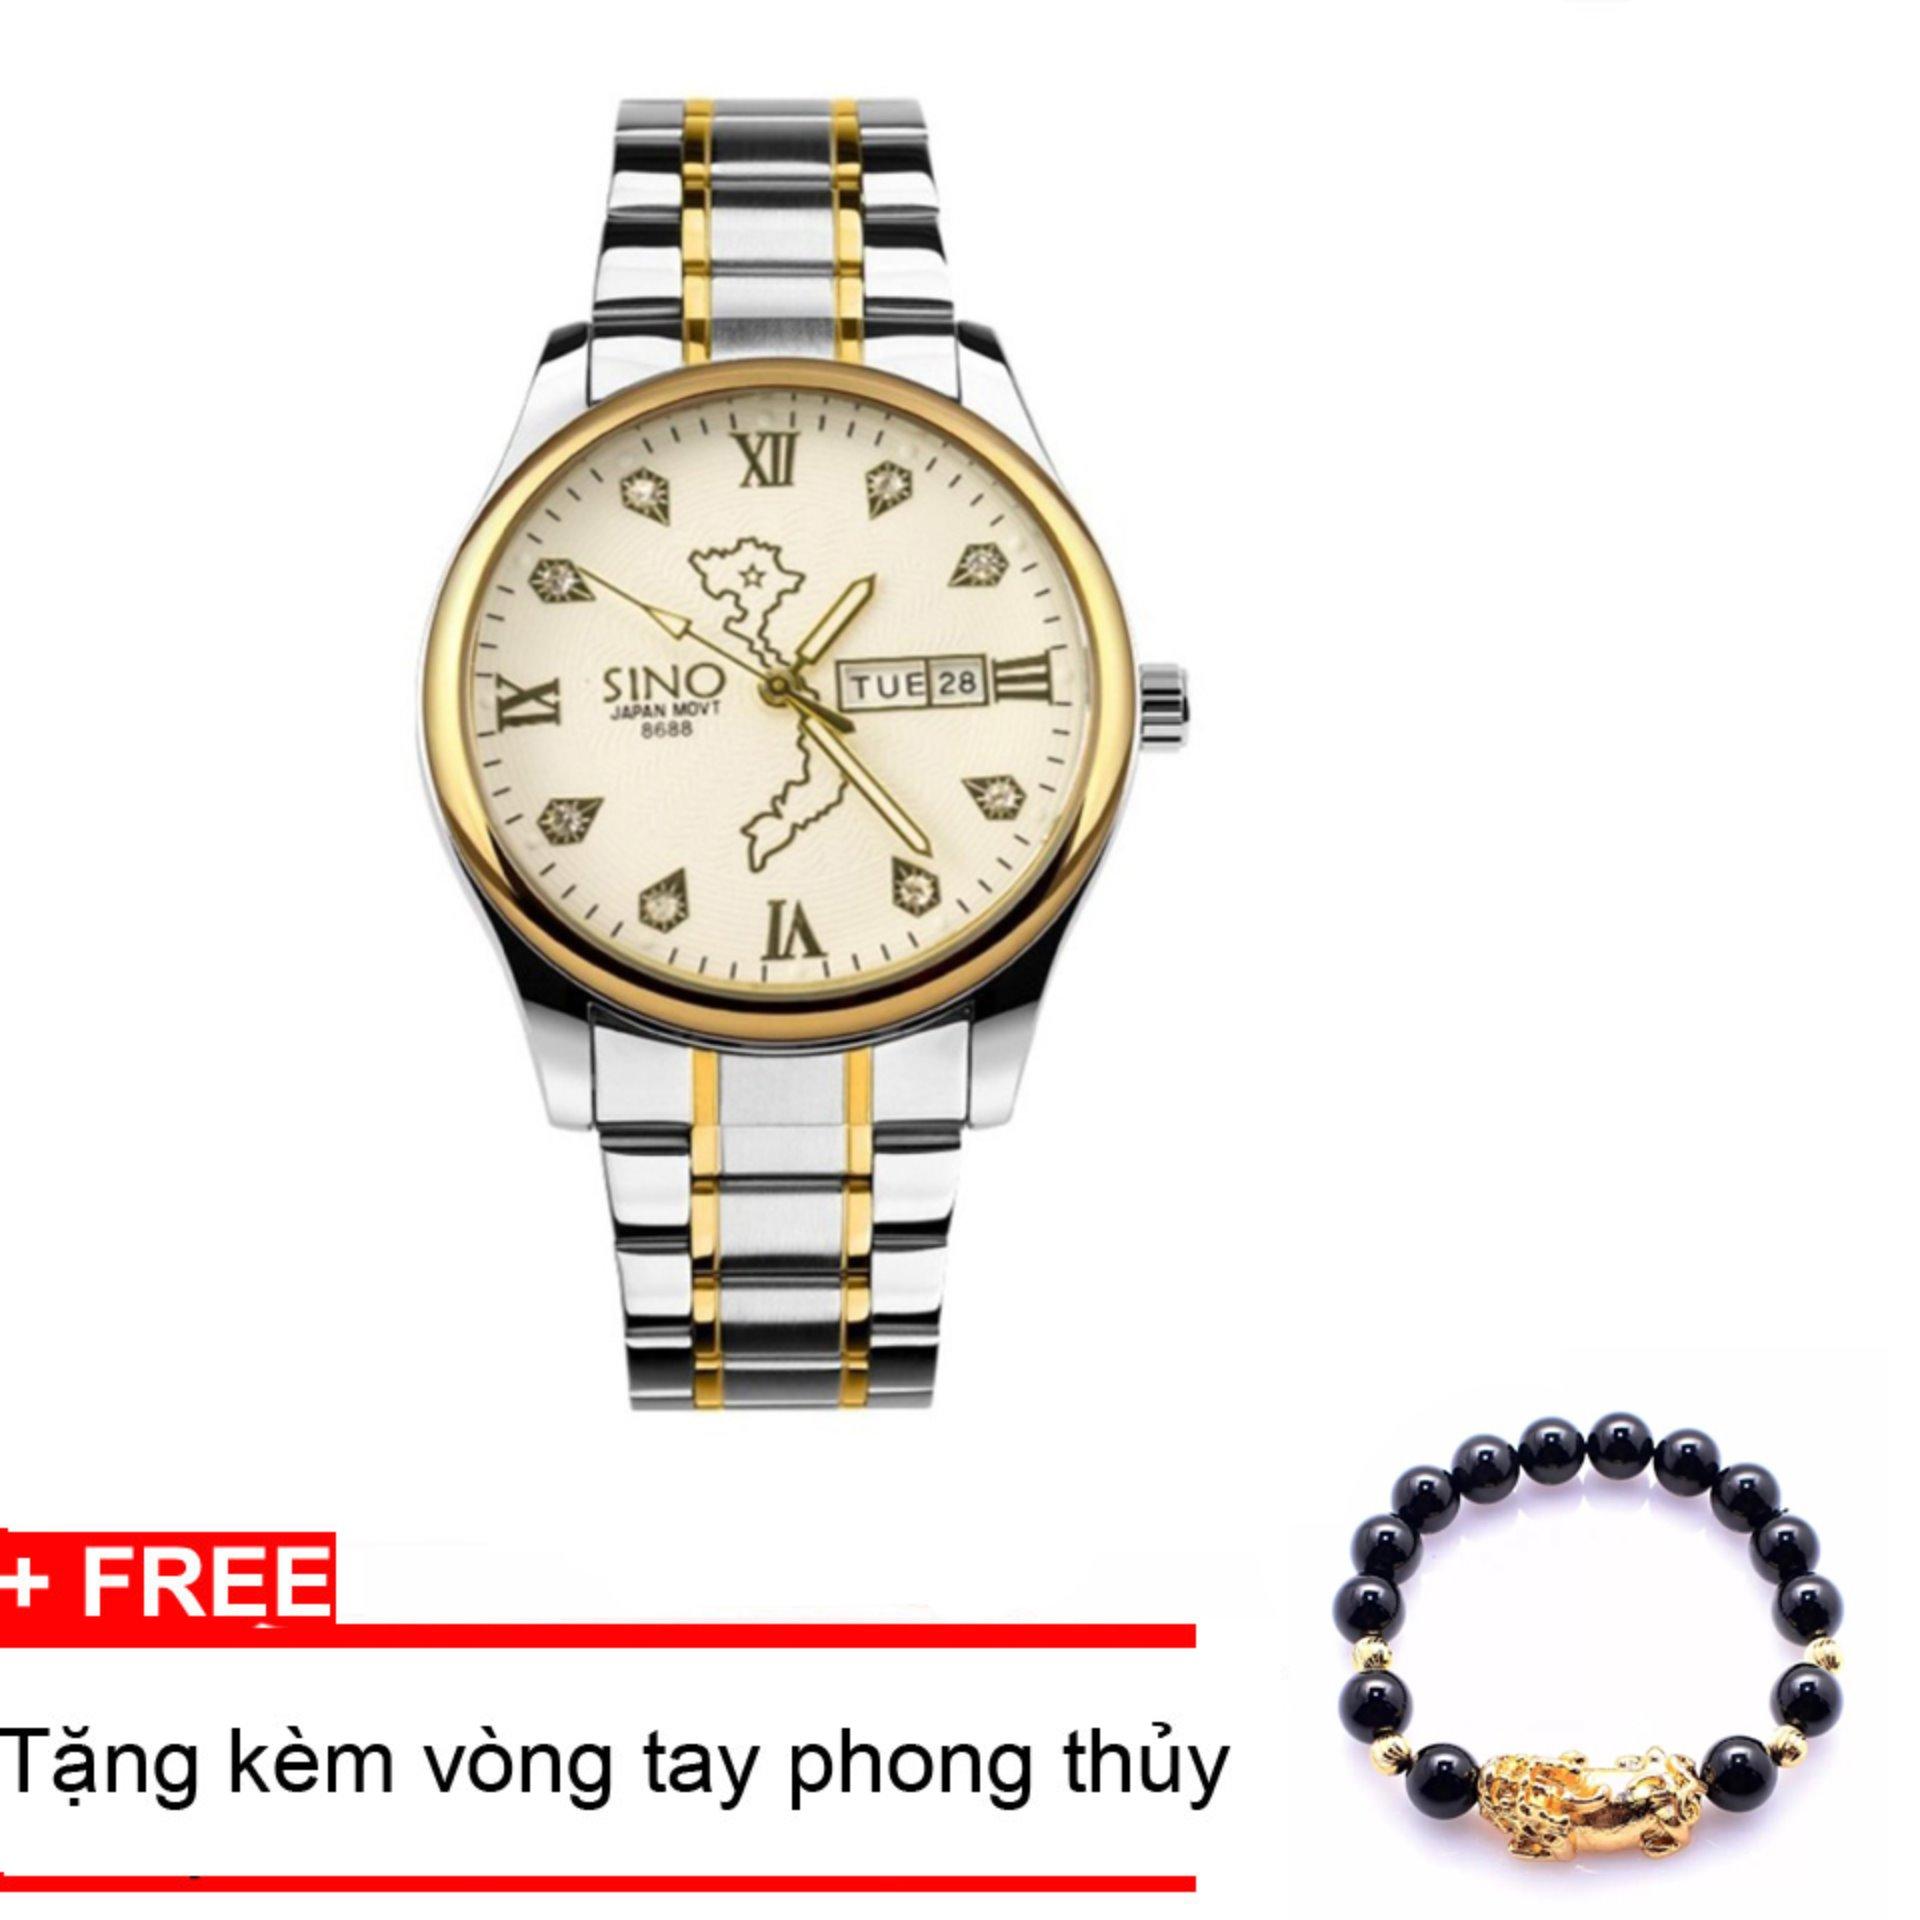 Đồng hồ nam dây thép, bản đồ Việt Nam SINO Japan (Mặt trắng) MDL-S8688, tặng vòng tay đá đen